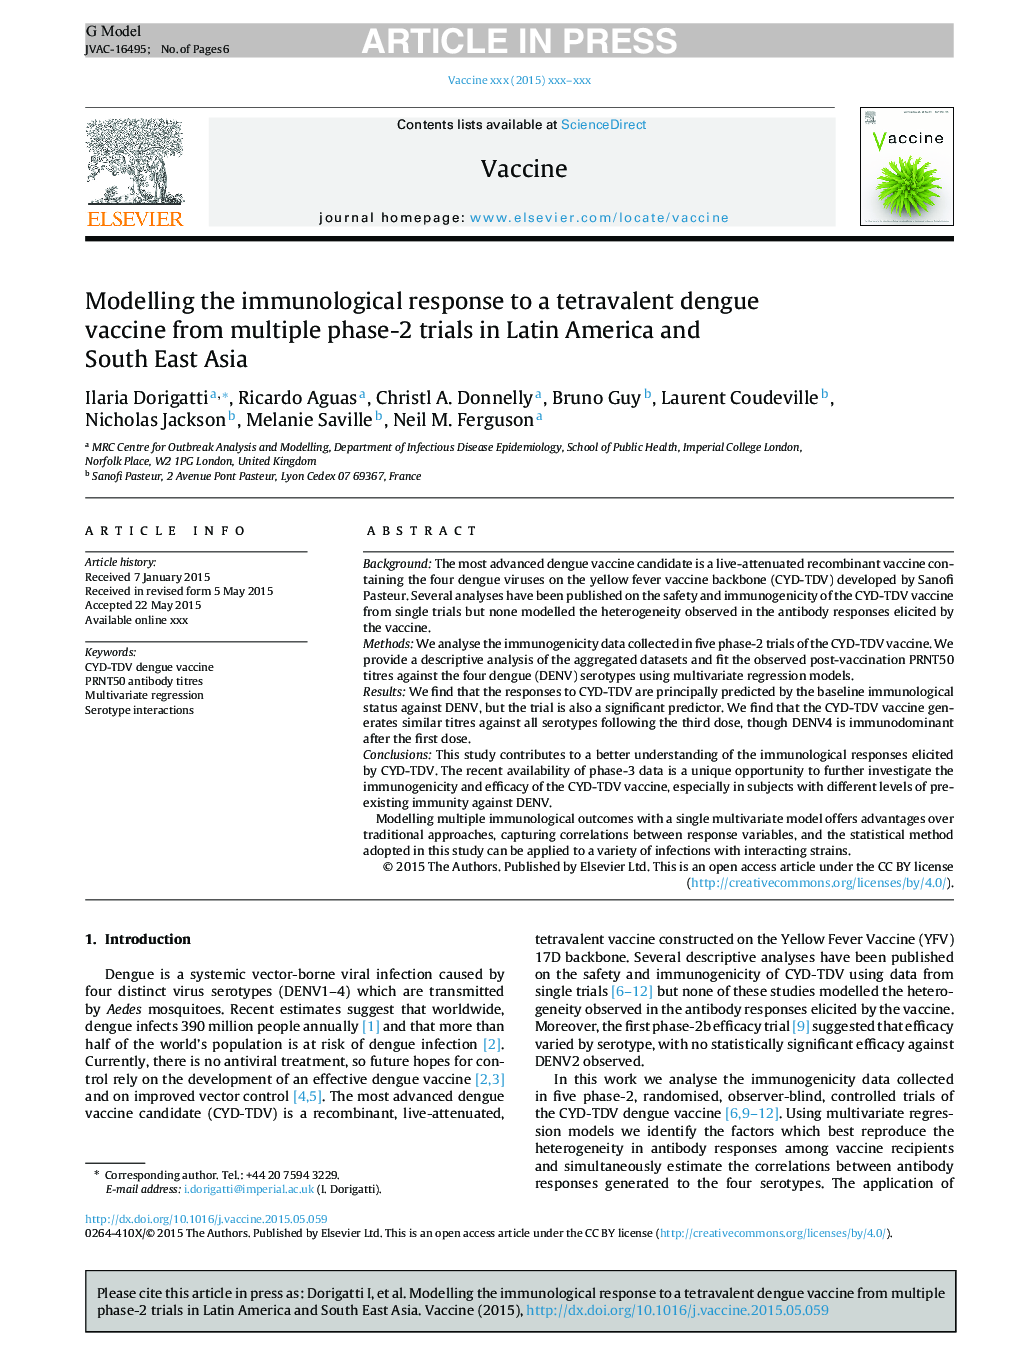 مدل سازی واکنش ایمونولوژیک به یک واکسن چهار نفره دنگی از آزمایشات چند مرحله ای در آمریکای لاتین و جنوب شرقی آسیا 